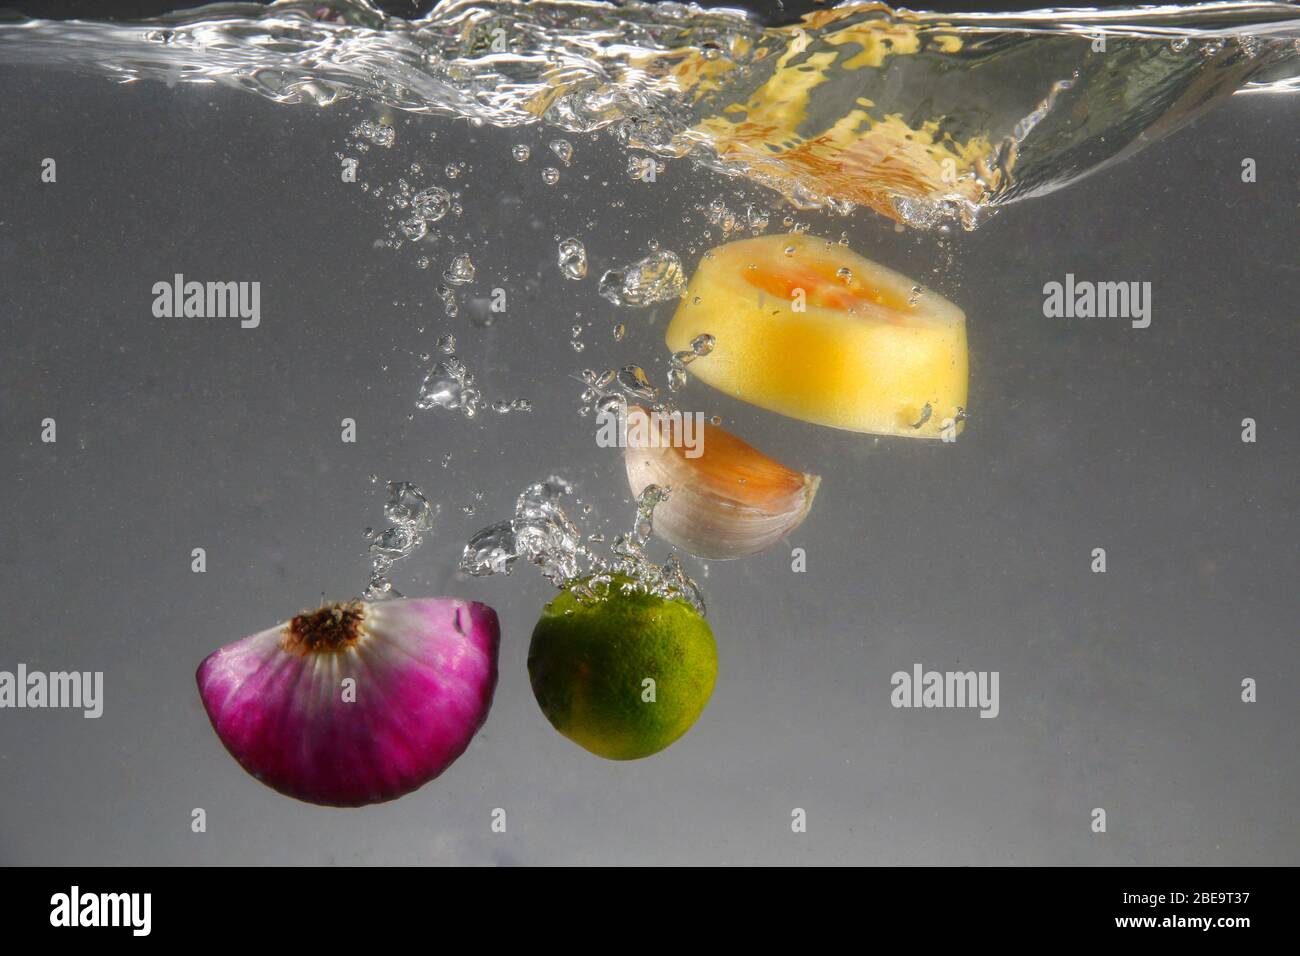 Photo de l'oignon rouge, de l'ail, de la tomate et du calamansi lâché dans l'eau Banque D'Images